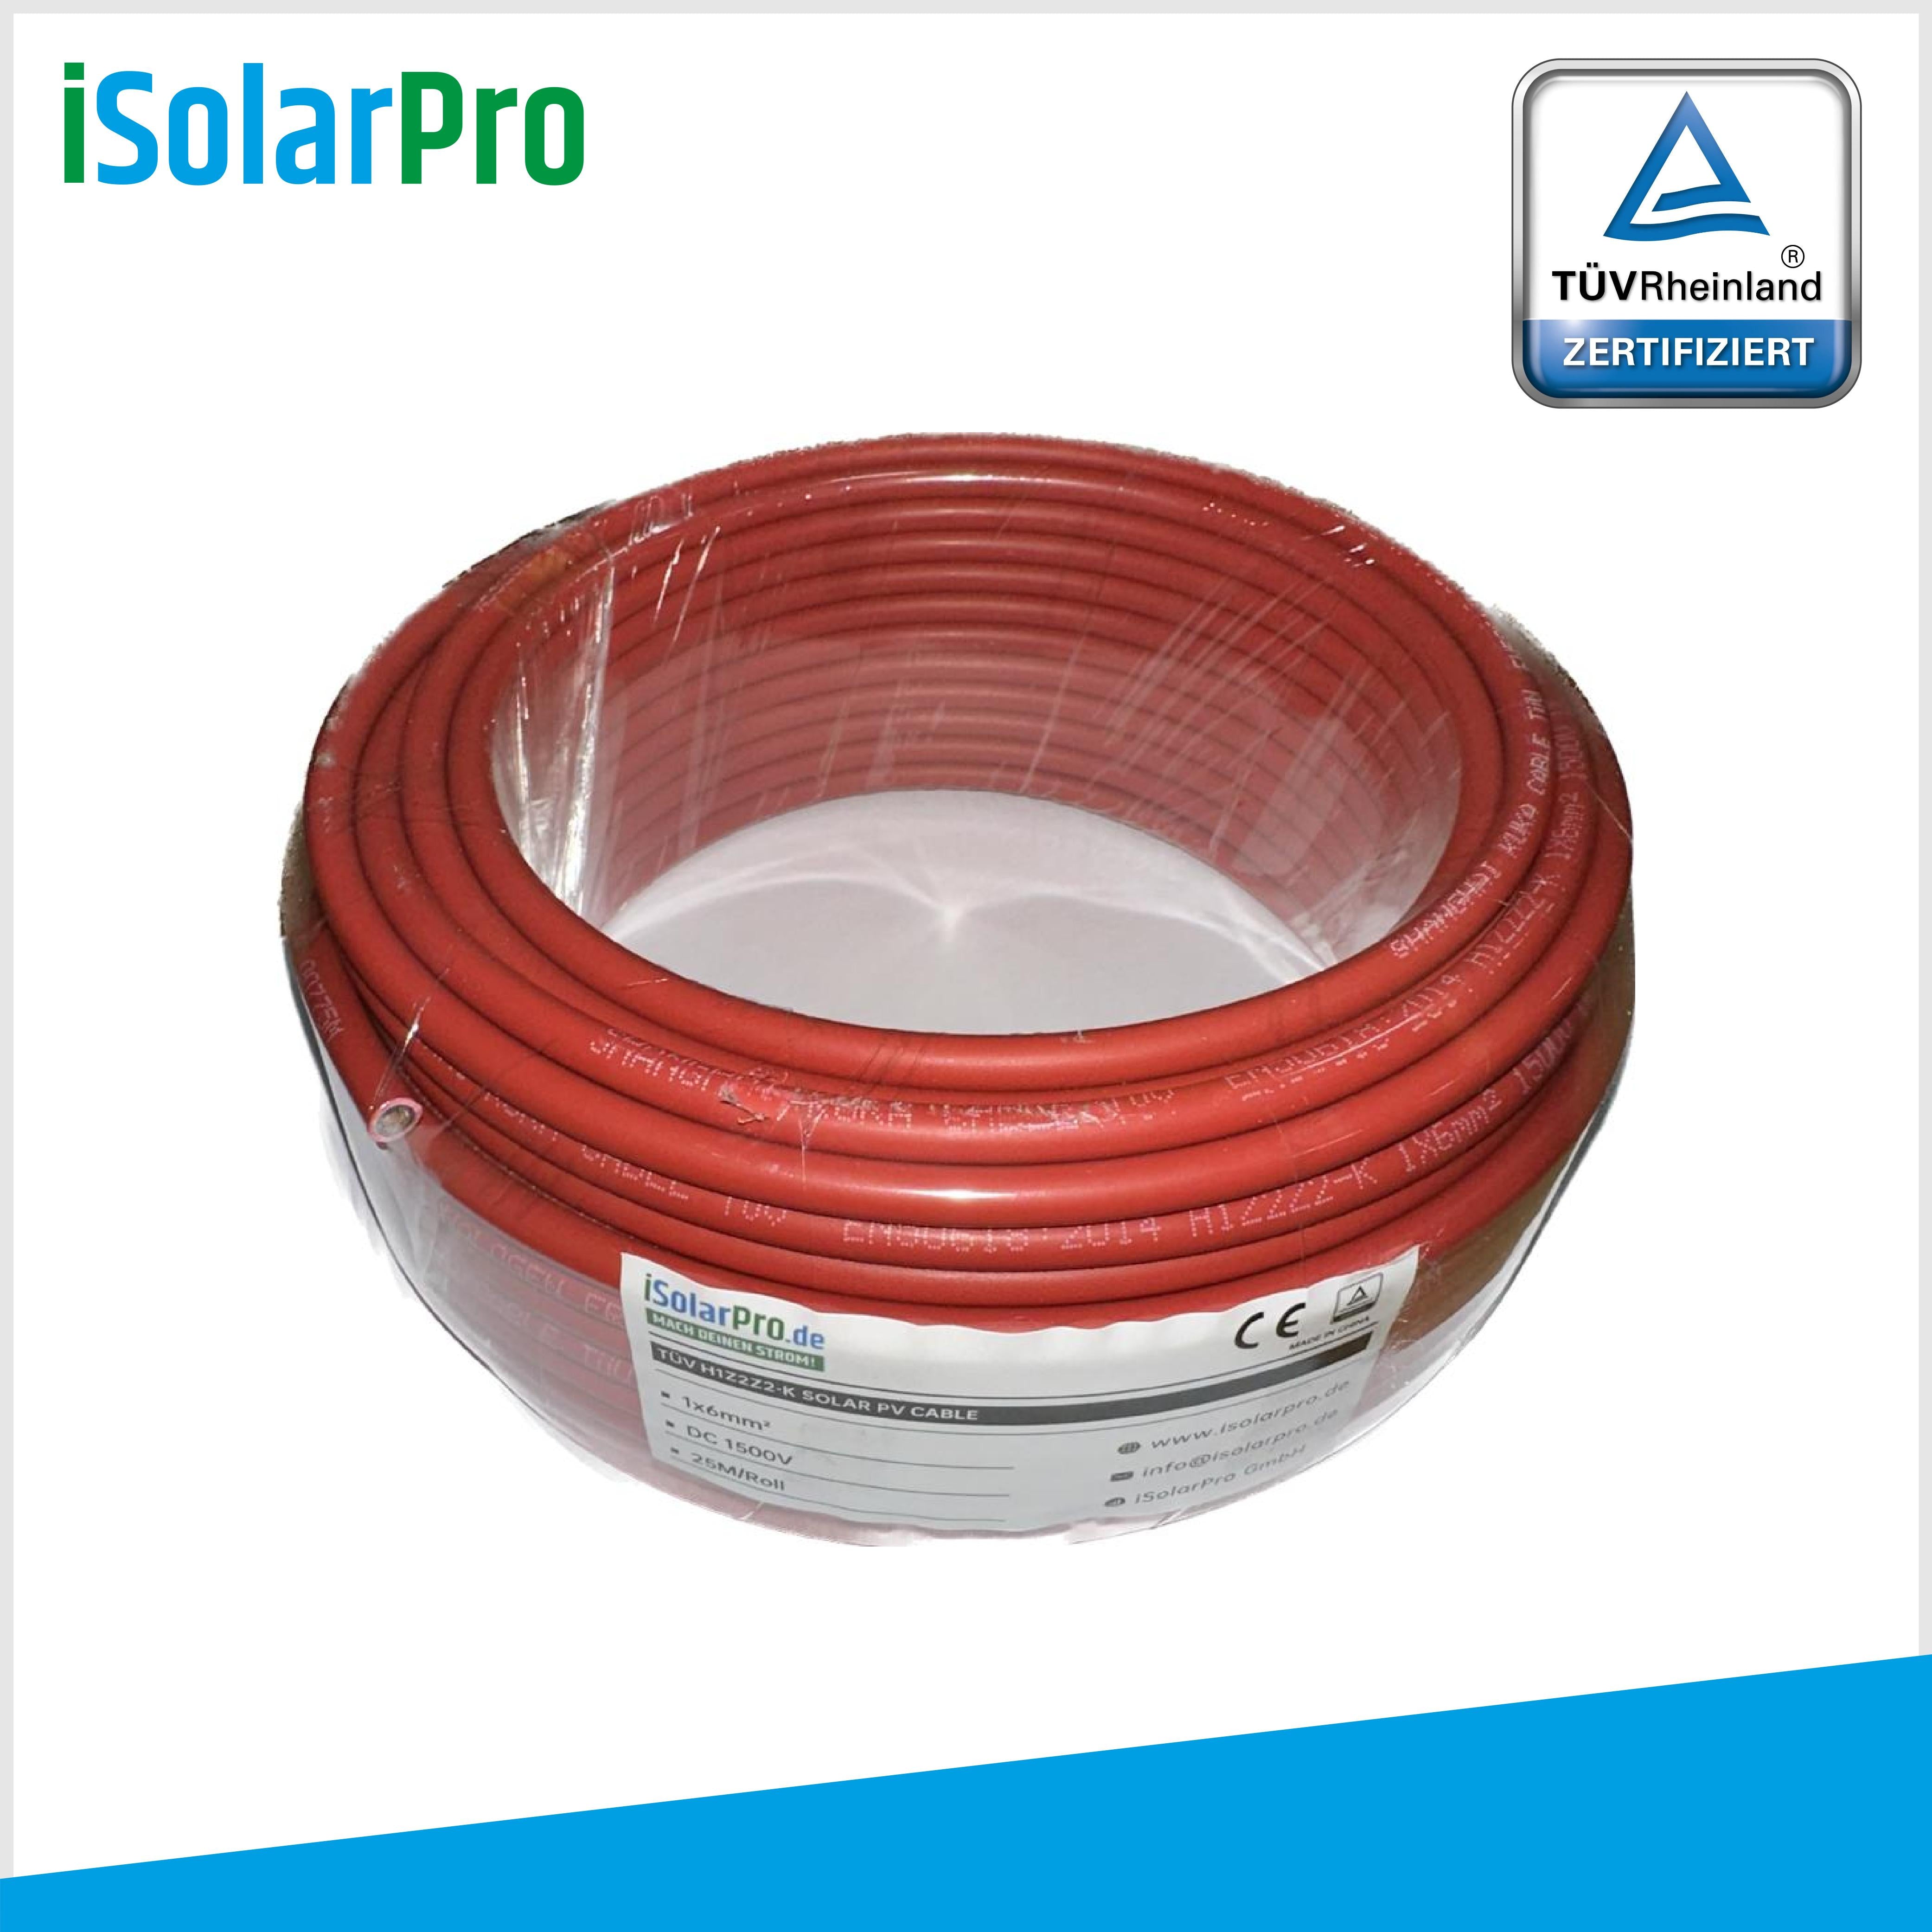 25m Solarkabel 6 mm² Photovoltaik Kabel für PV Anlagen rot